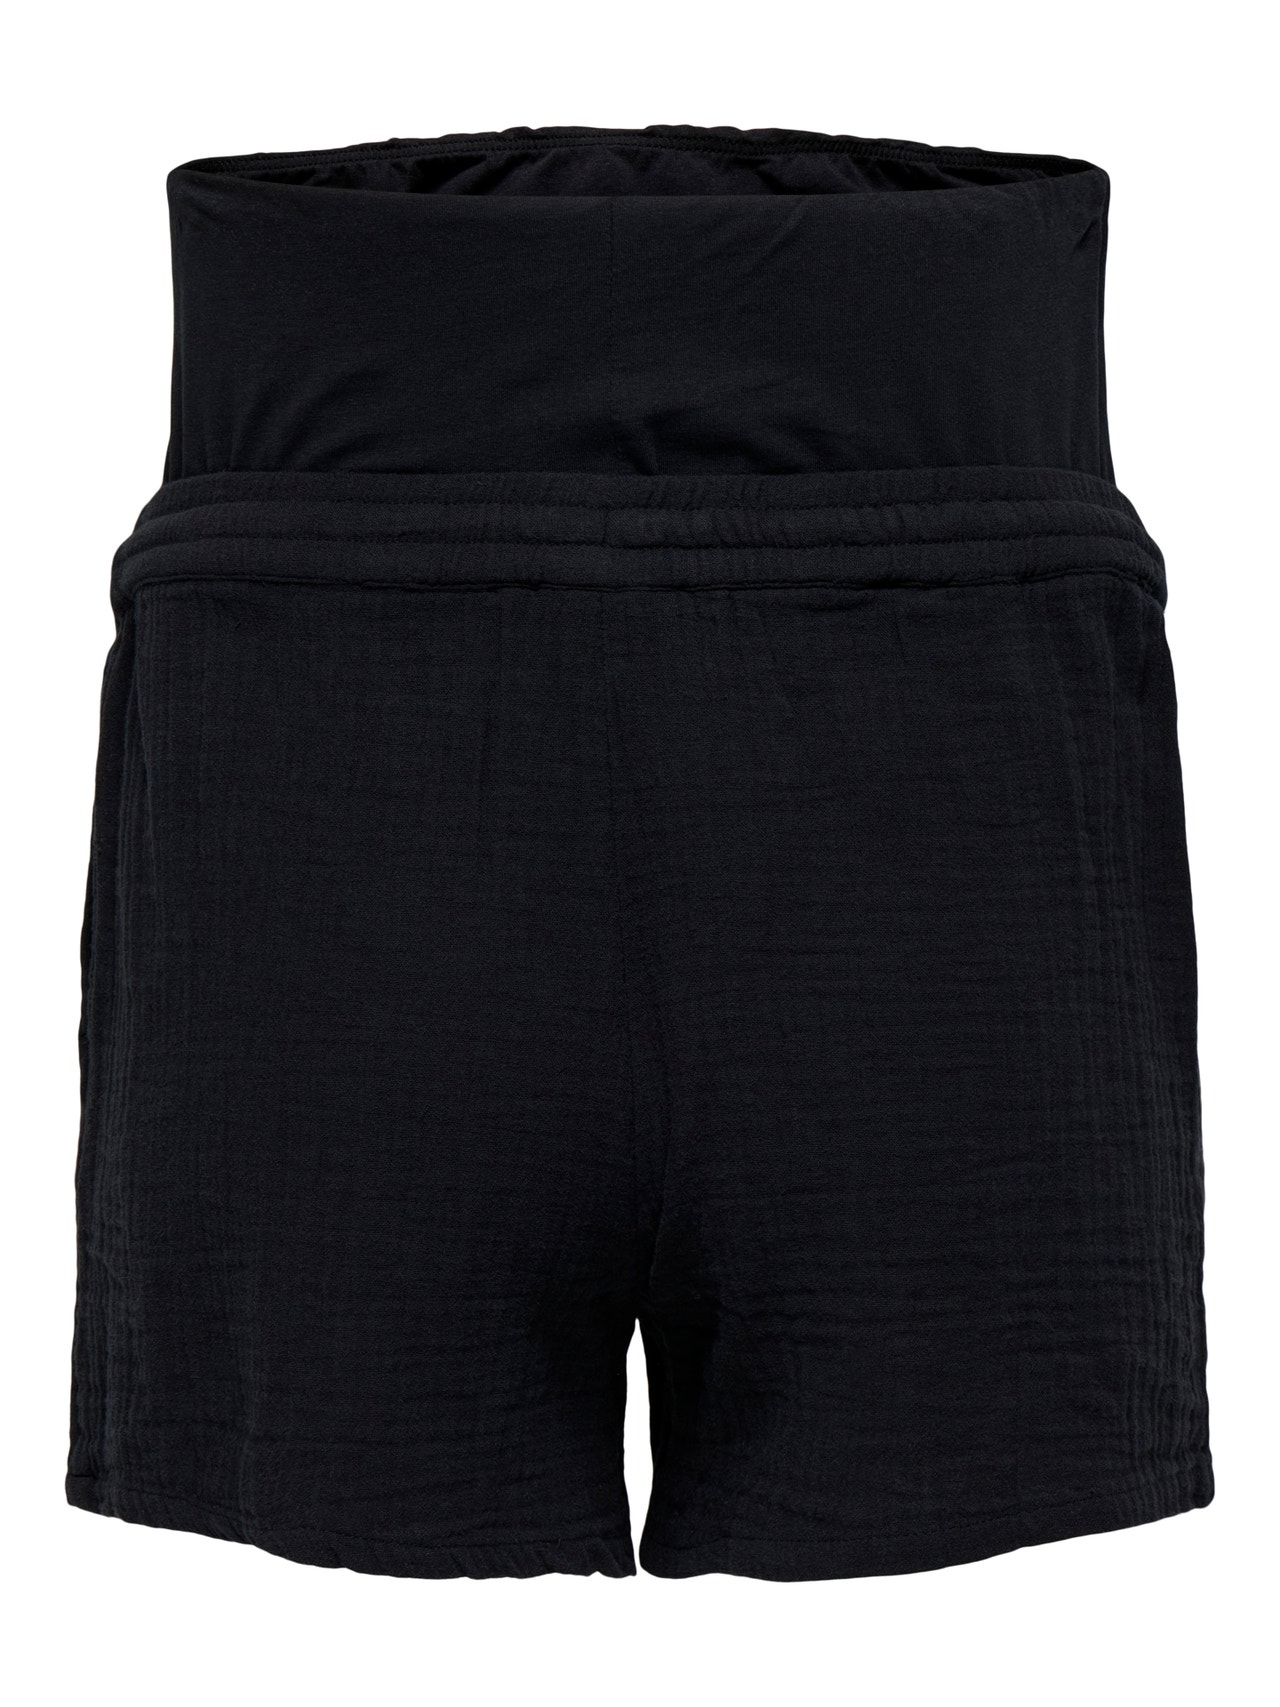 ONLY Mama drawstring shorts -Black - 15333800